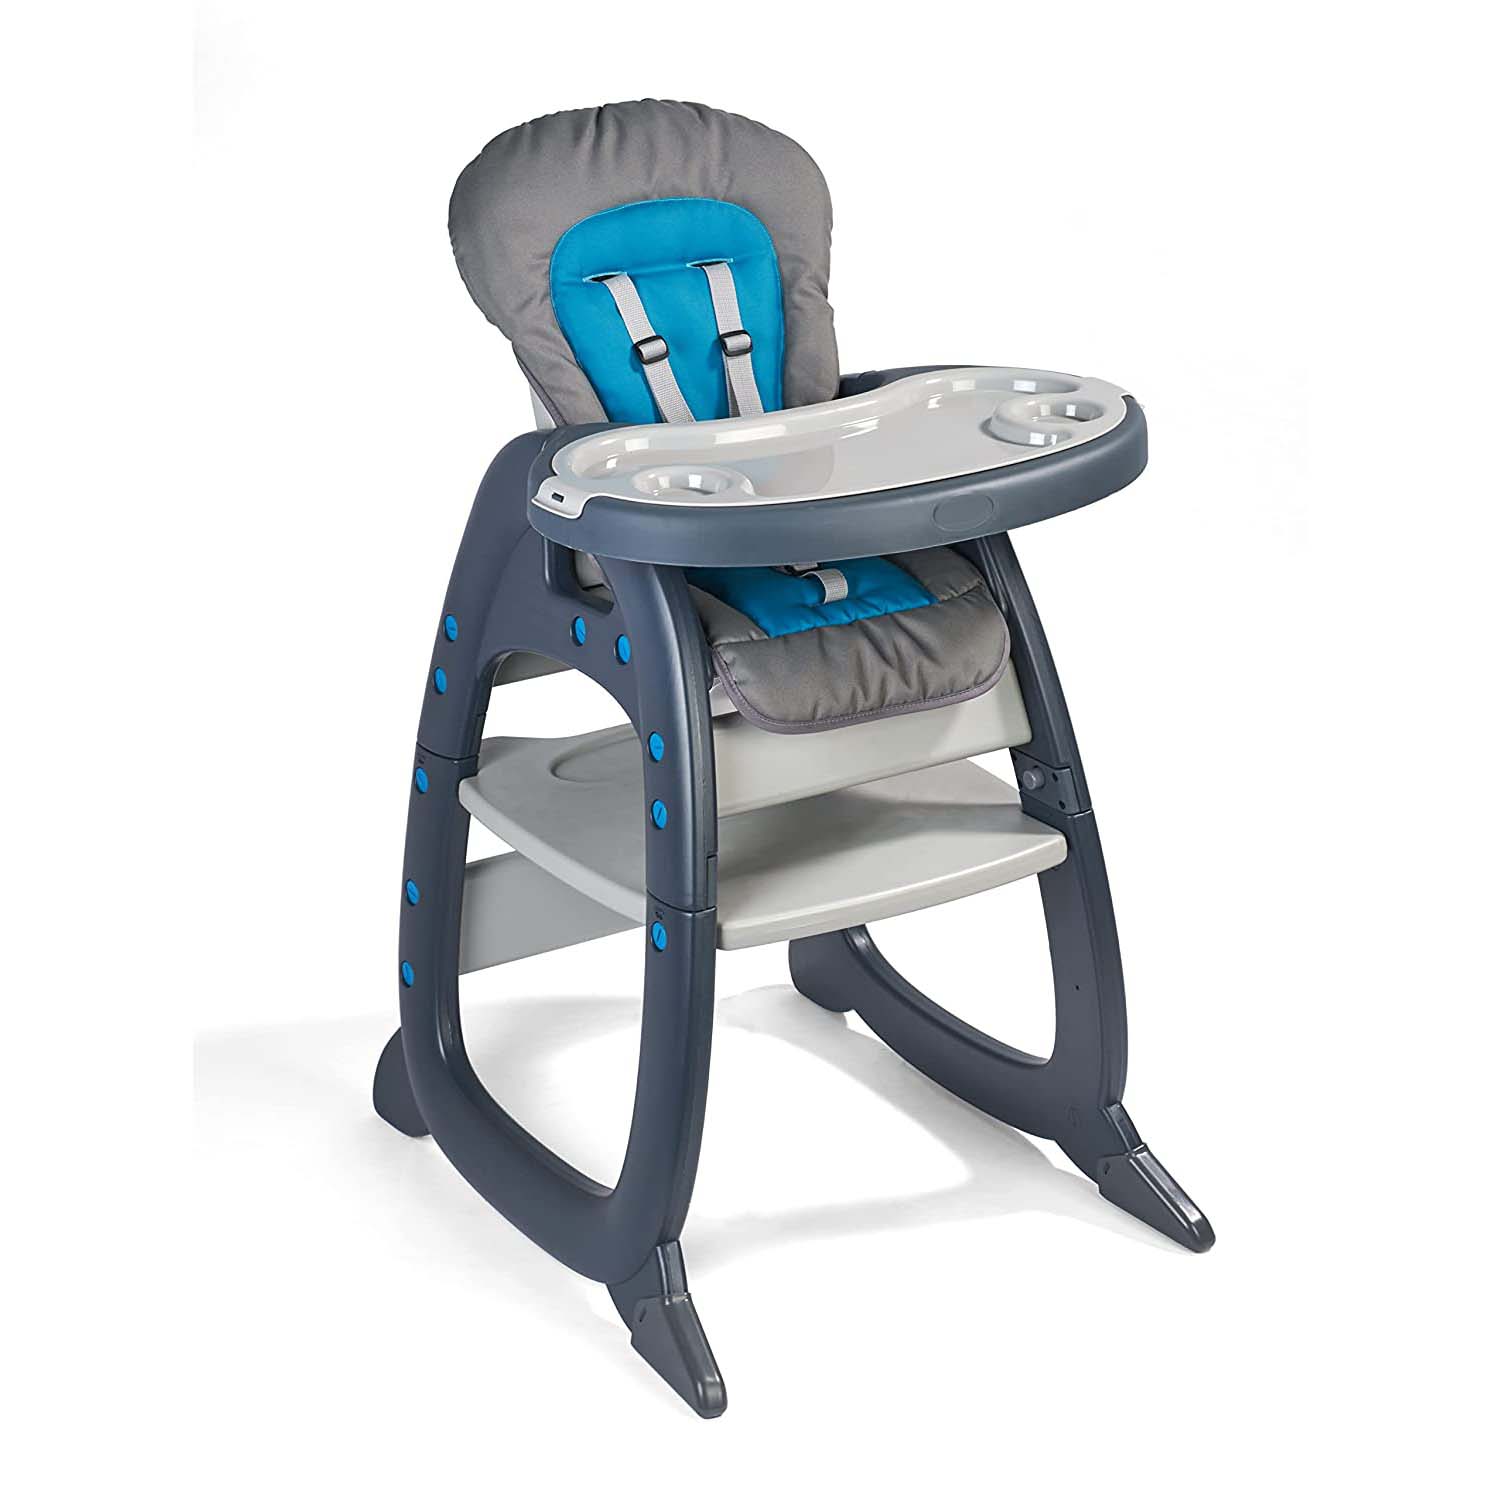 стульчик для кормления bs 8129 серо бежевый регулируемый Детский стульчик-трансформер Badger Basket Envee II, серый/бирюзовый